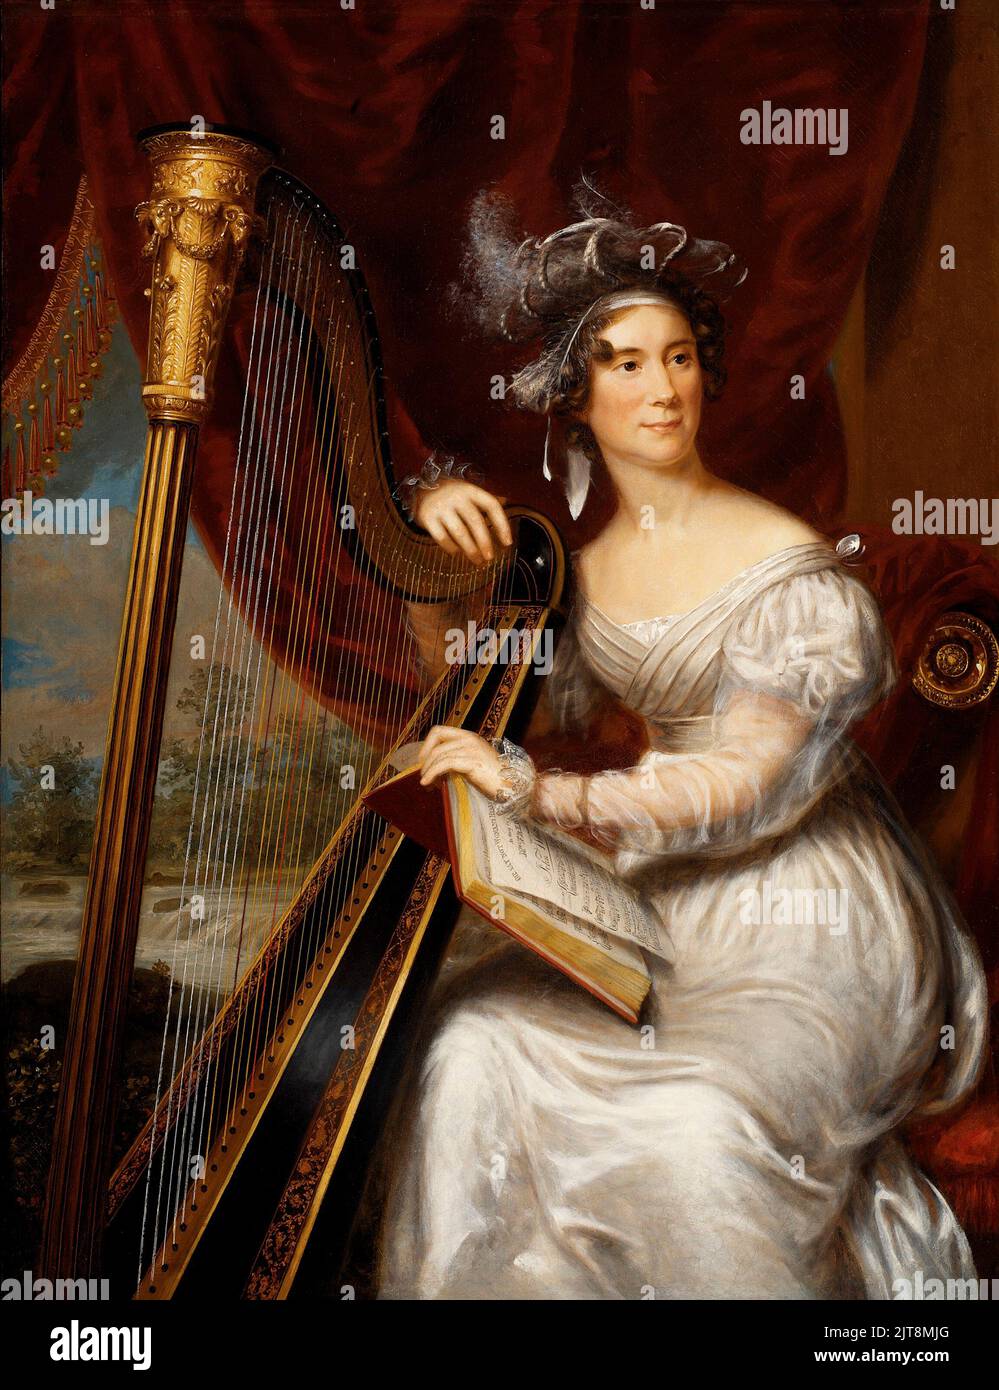 Un portrait de Louisa Catherine Johnson Adams. Elle était la femme et la première dame de John Quincy Adams, le président des États-Unis en 6th. La peinture est de Charles Bird King1821-26 Banque D'Images